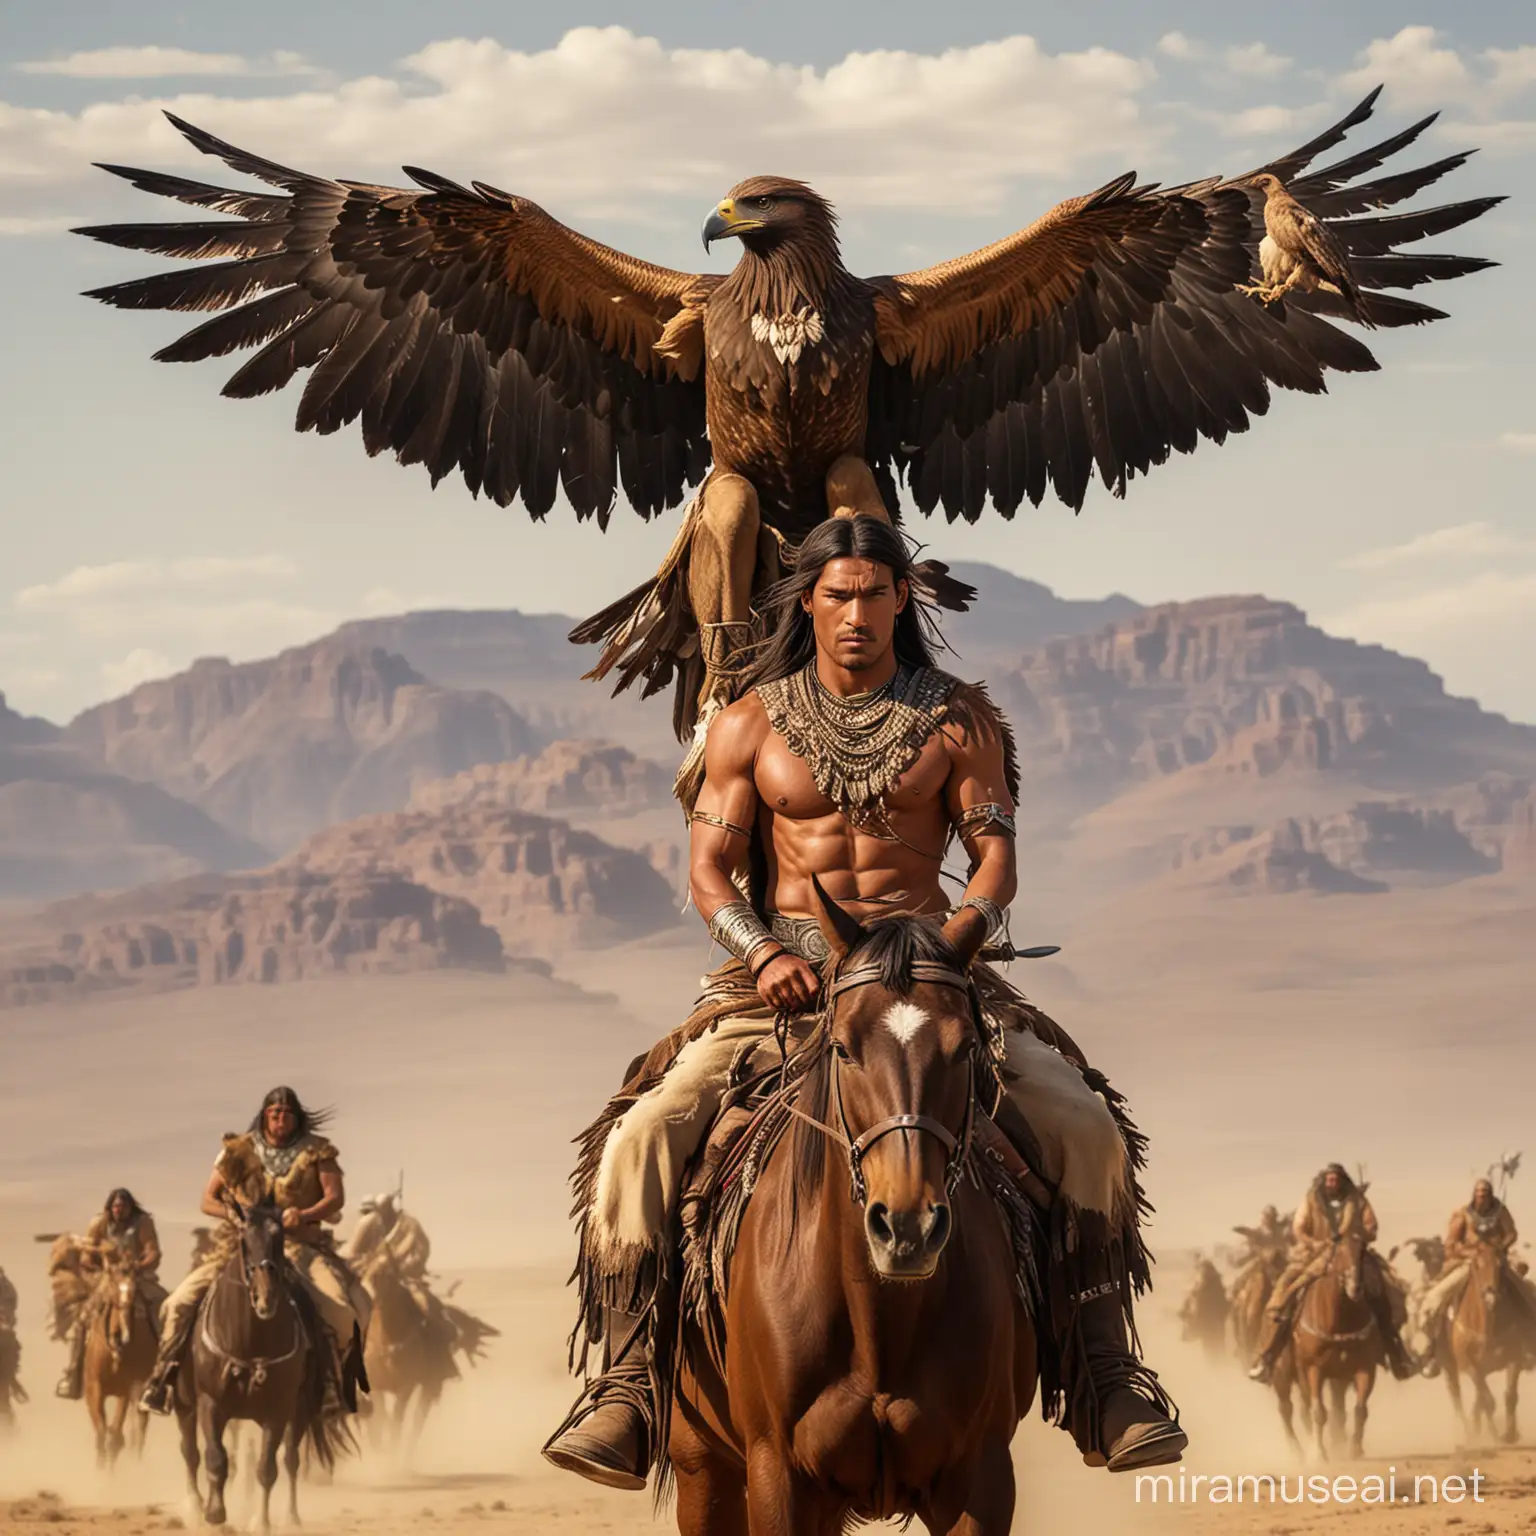 Guerrero apache alto musculoso guapo con alas grandes largas de aguila que le salen de la espalda  ,va a caballo en medio del desierto junto a una gigantesca aguila real y de fondo guerreros apaches y búfalos 